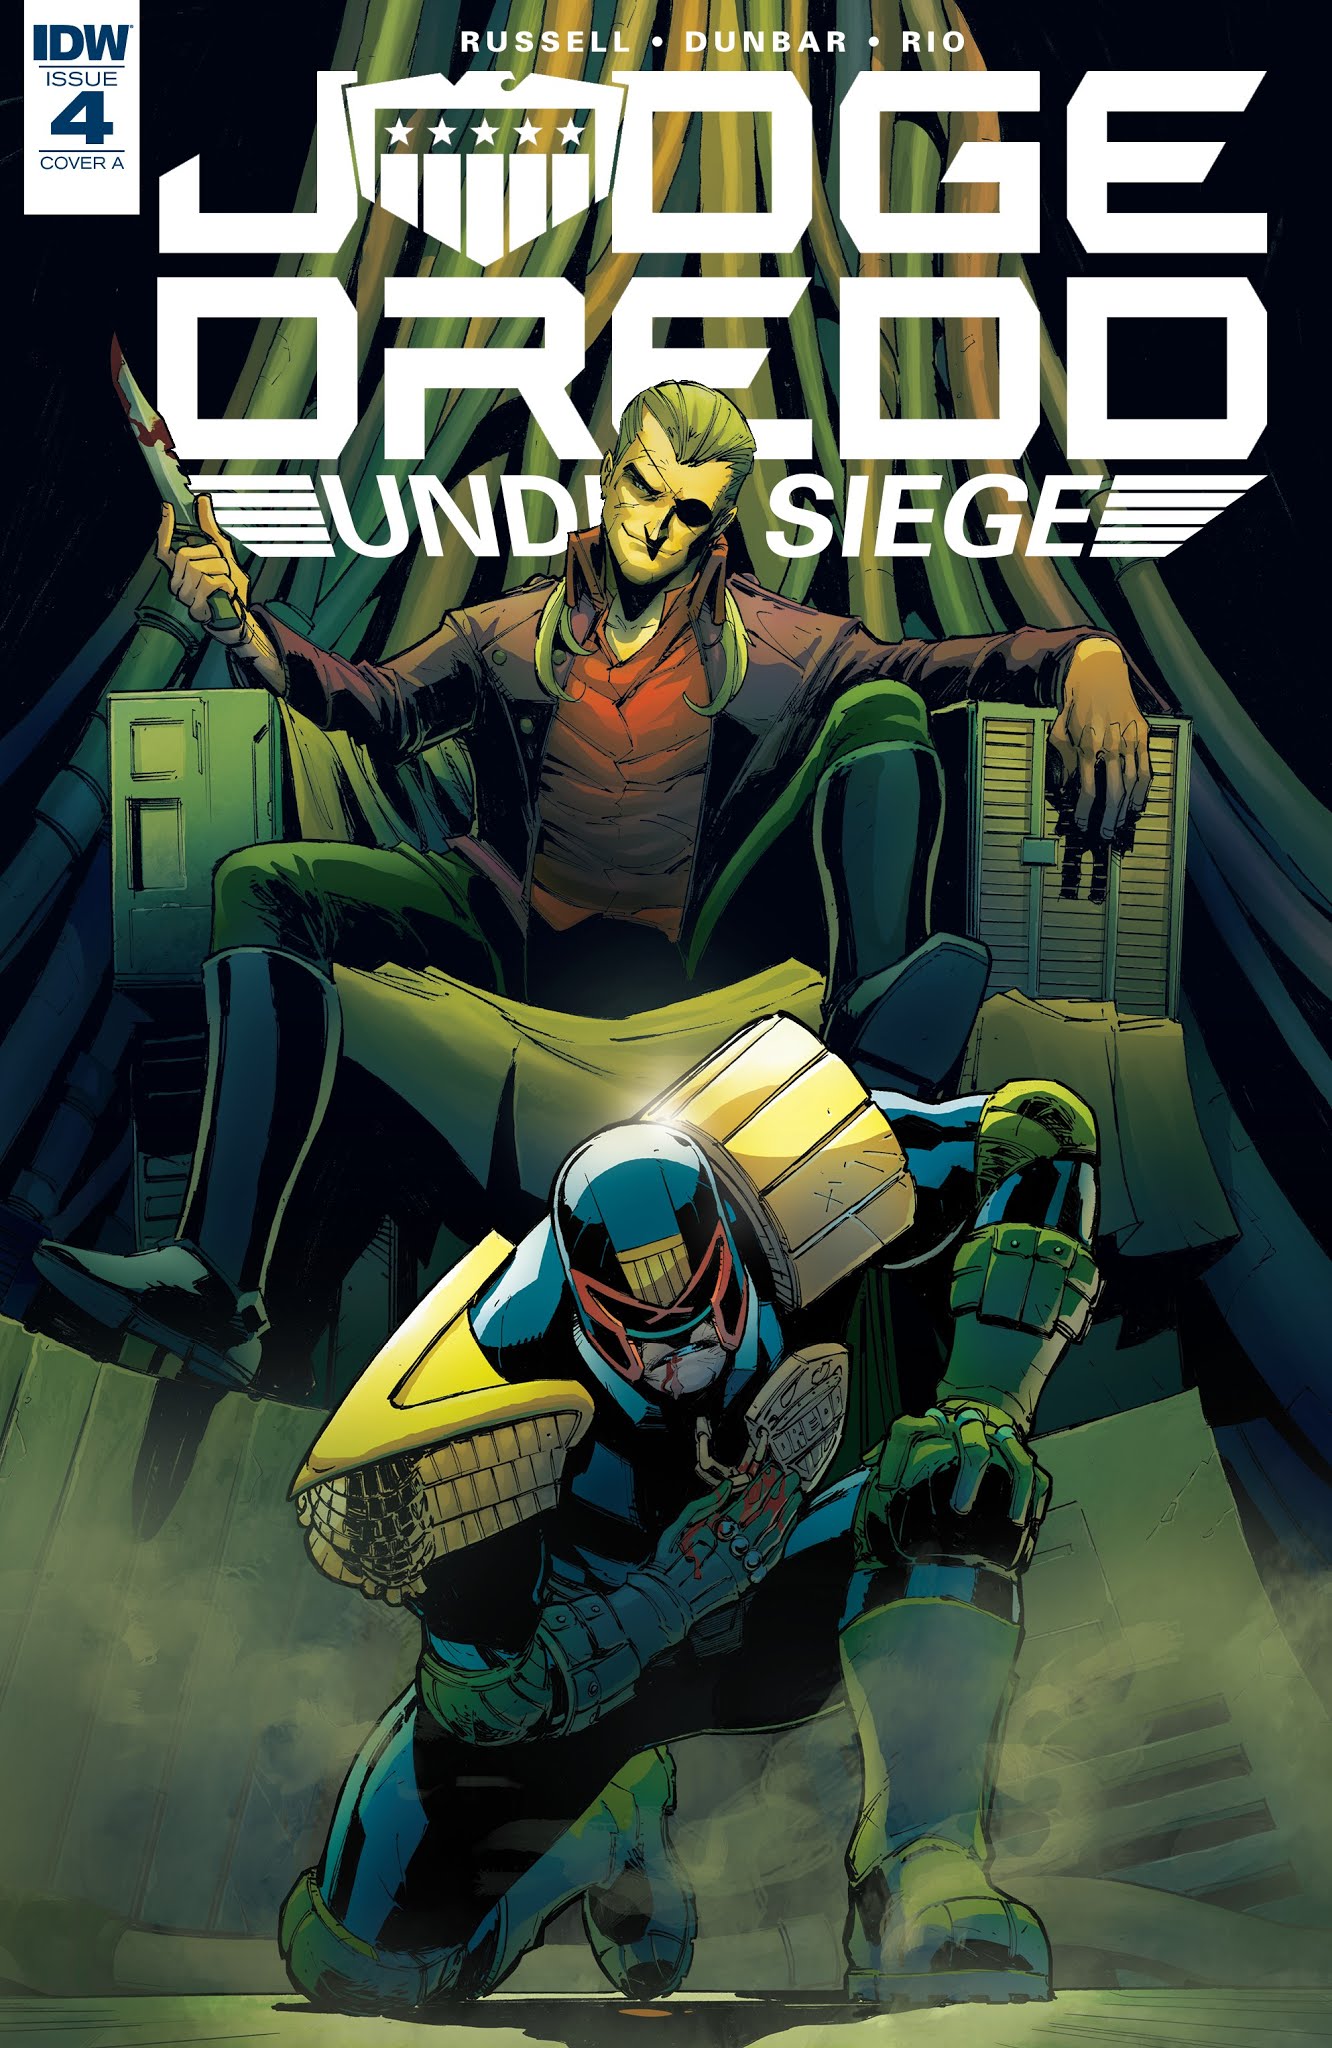 Read online Judge Dredd: Under Siege comic -  Issue #4 - 1